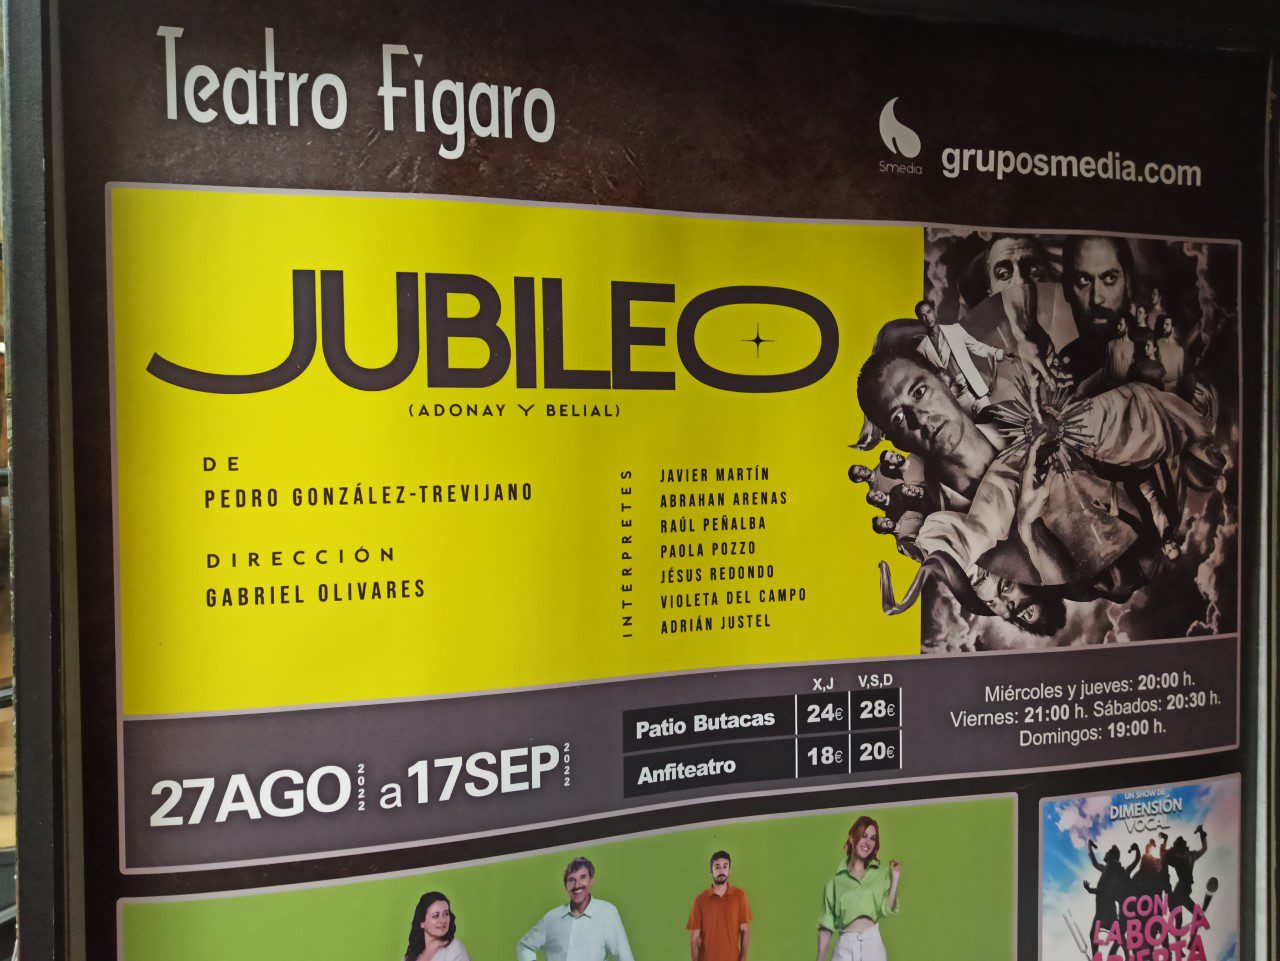 Jubileo (Adonai y Belial) – Teatro Fígaro